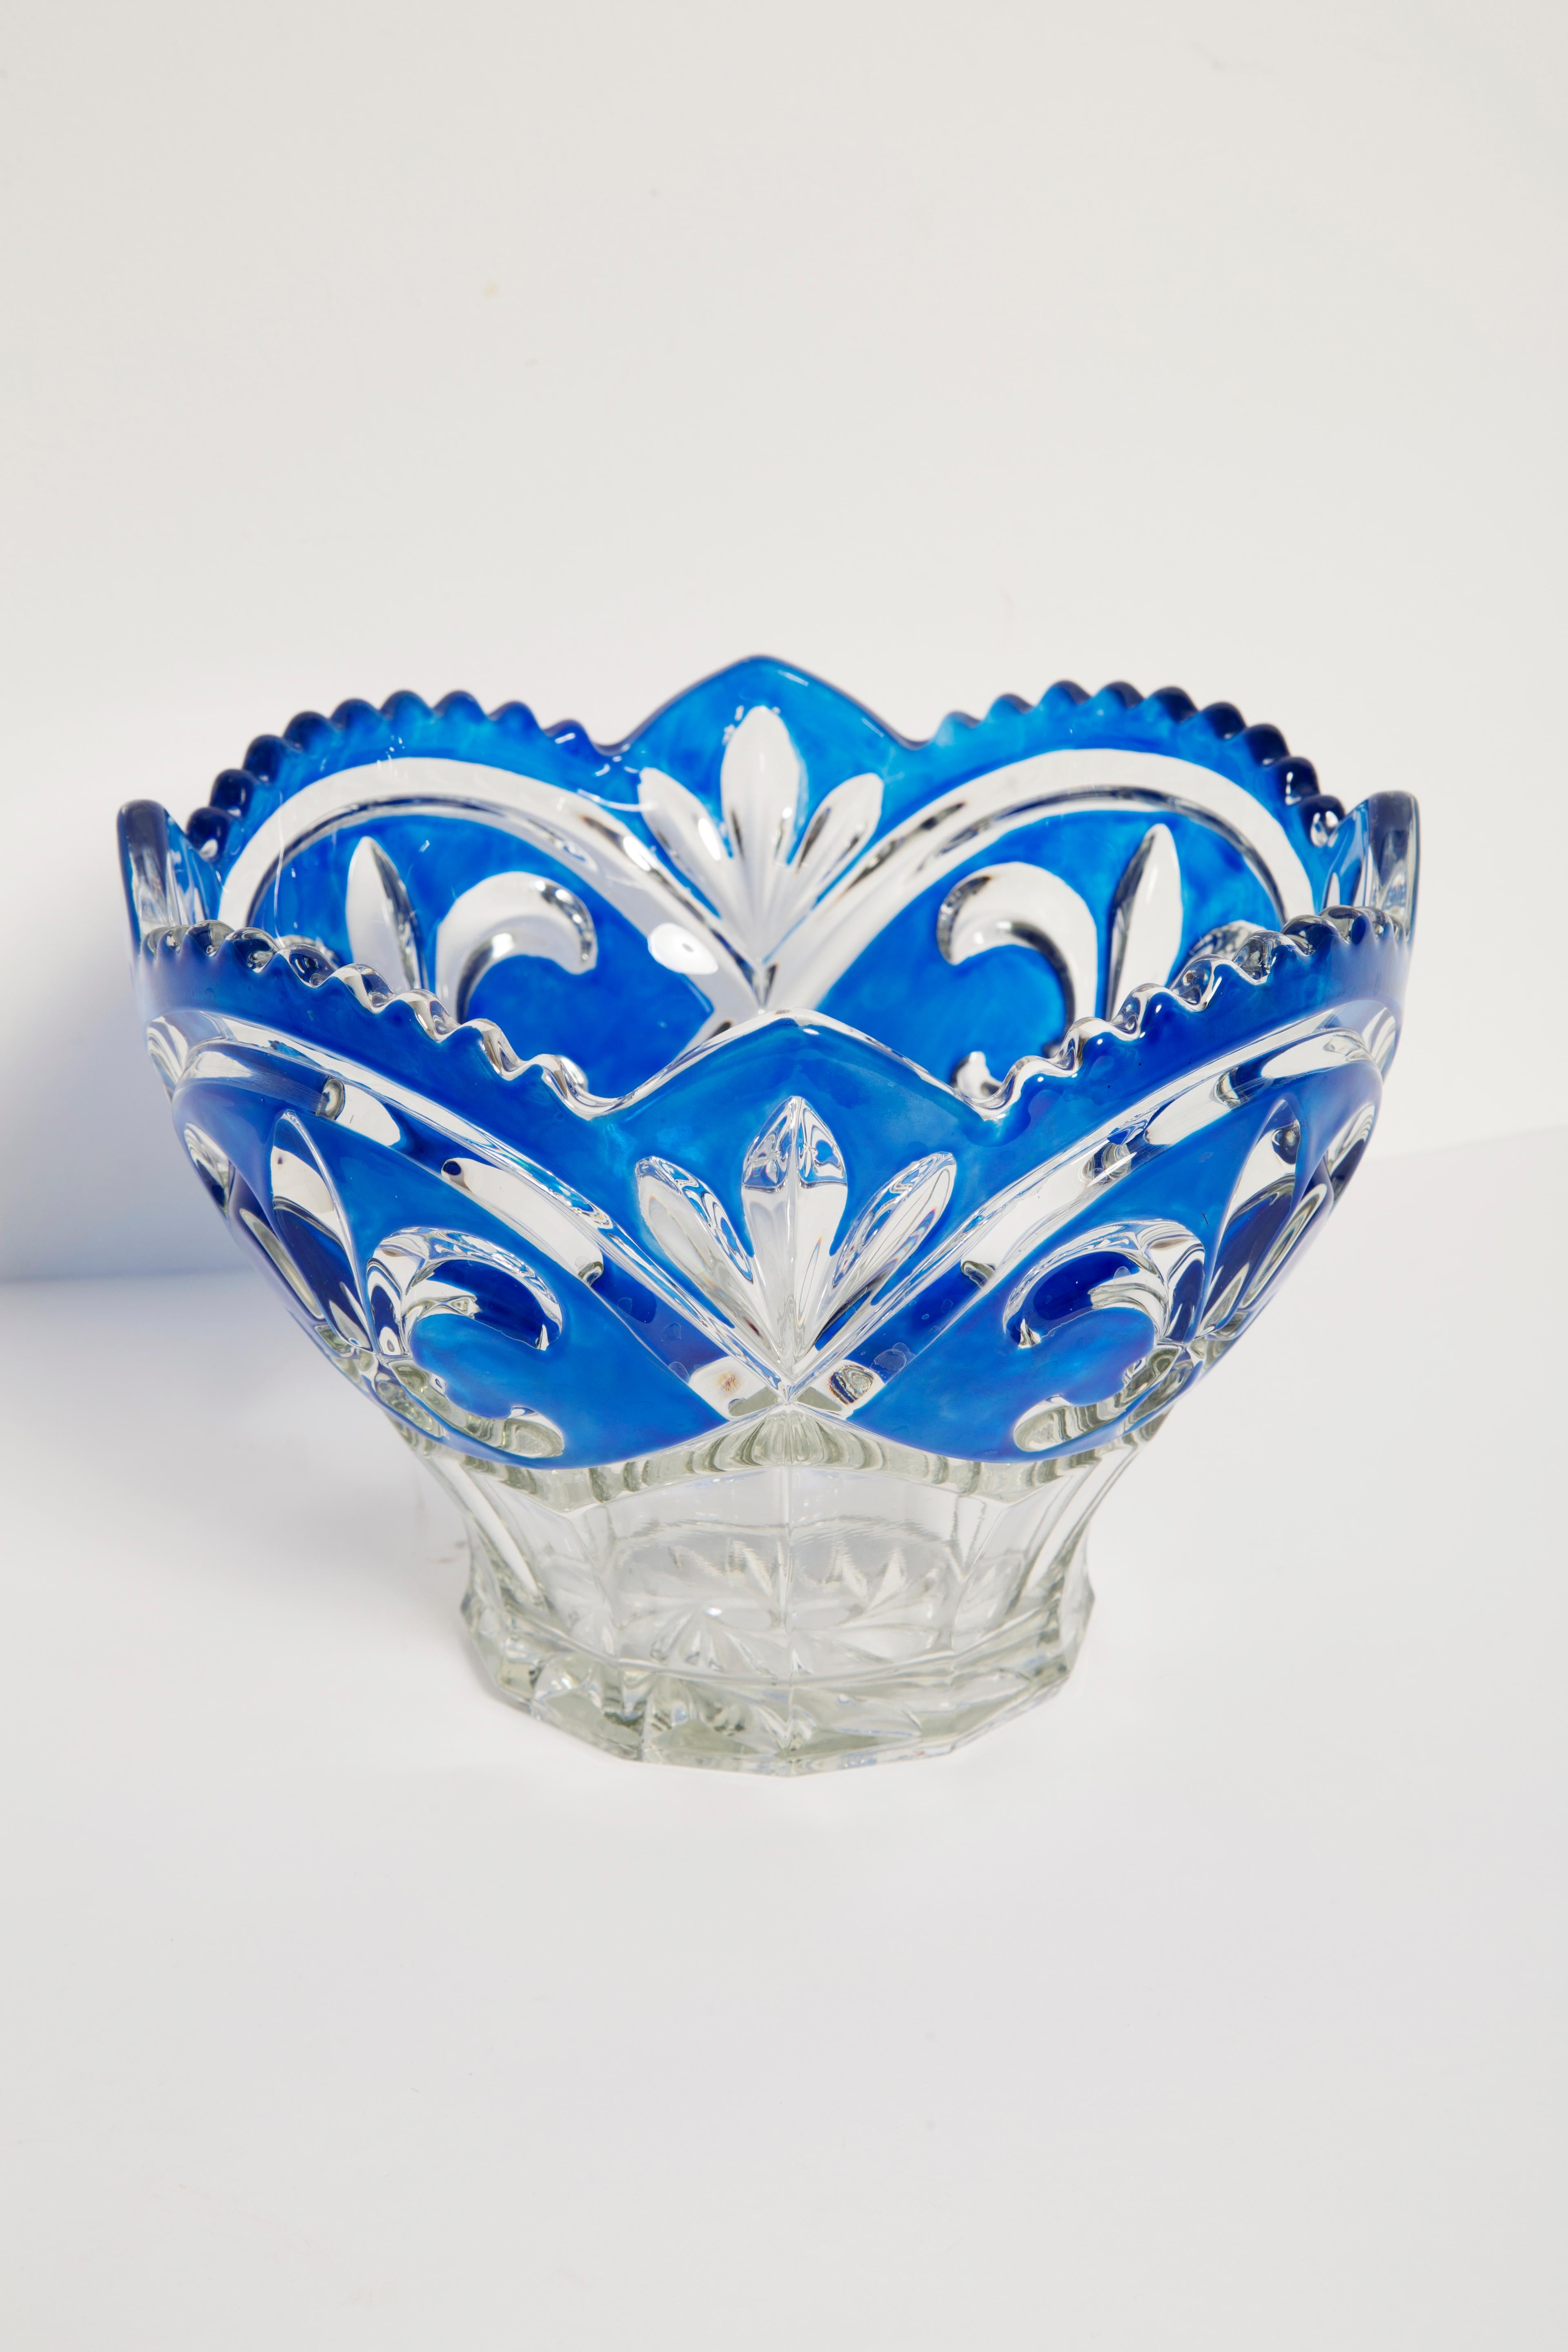 Magnifique assiette/bol décoratif en verre bleu cristal d'Italie. La plaque est en très bon état vintage, sans dommage ni fissure. Verre original. Une pièce unique pour chaque table et chaque intérieur ! Une seule pièce disponible.